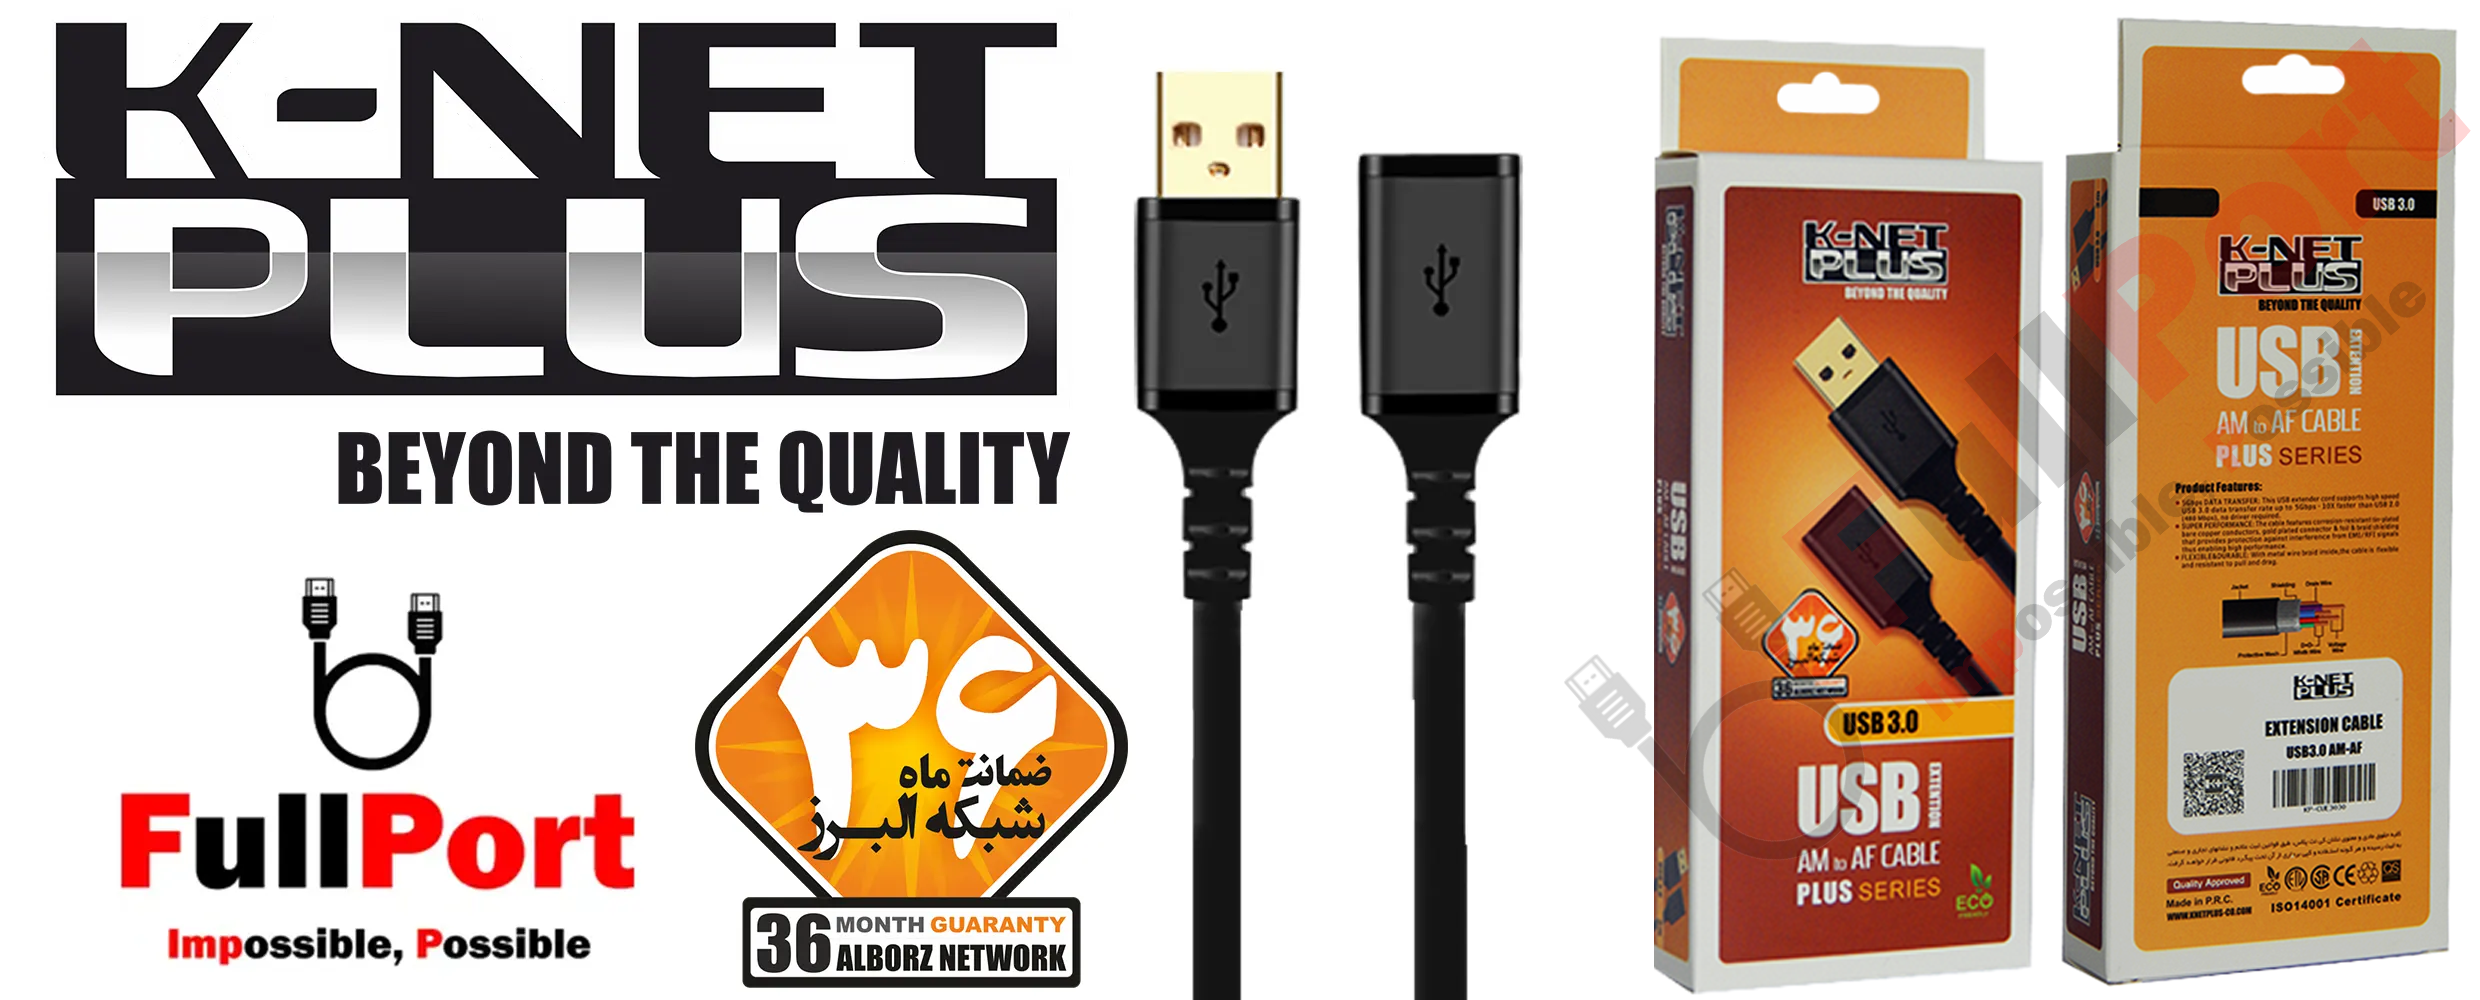 مشاهده قیمت و خرید کابل افزایش طول USB3.0 برند کی نت پلاس مدل K-NET PLUS زیر قیمت بازار با ارسال سریع و ایمن با گارانتی شبکه البرز